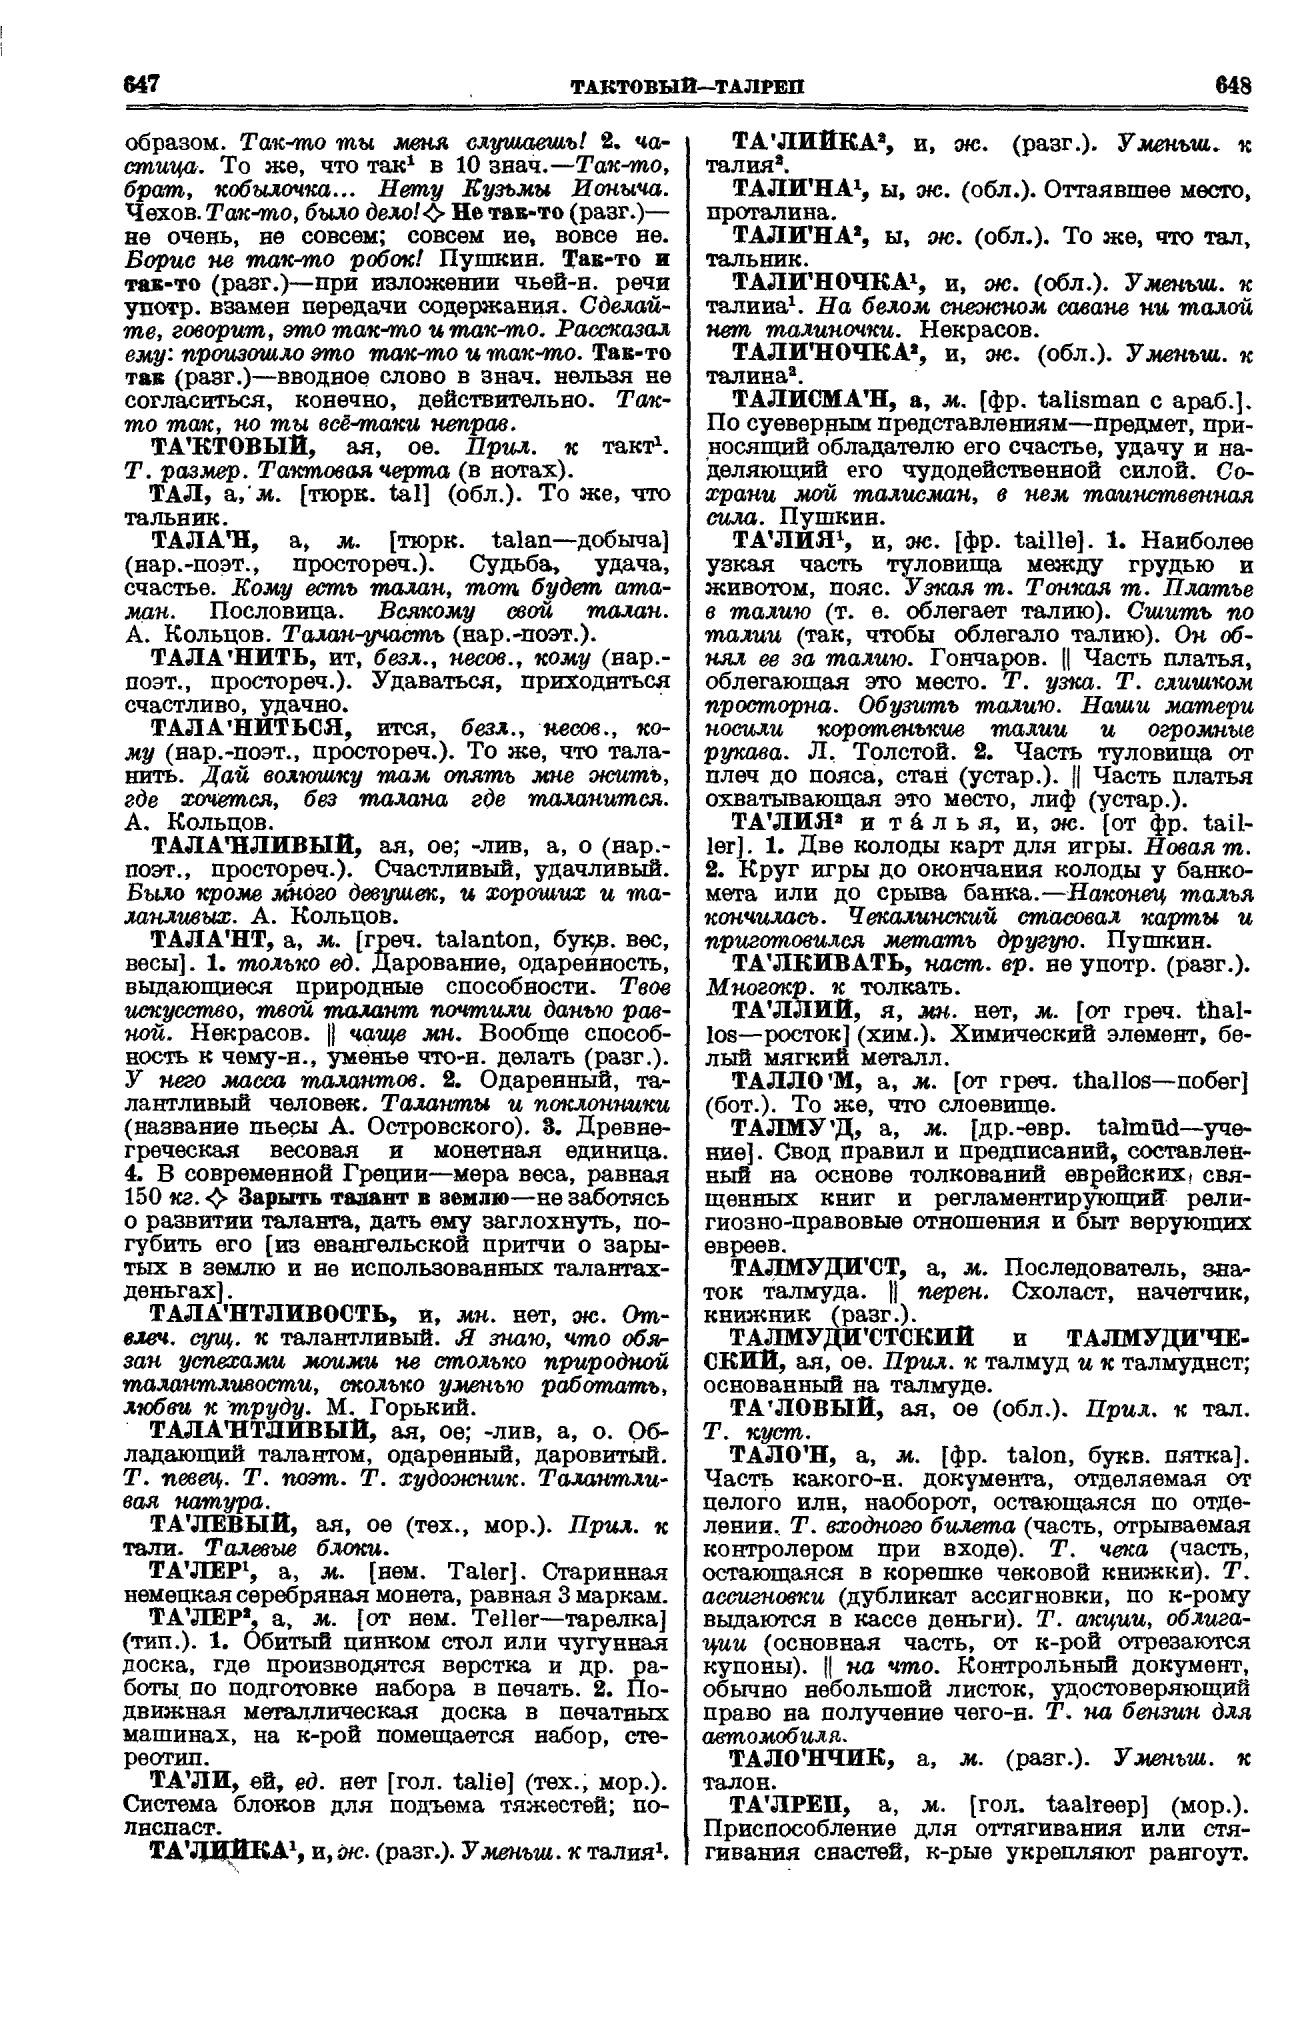 Фотокопия pdf / скан страницы 324 толкового словаря Ушакова (том 1)